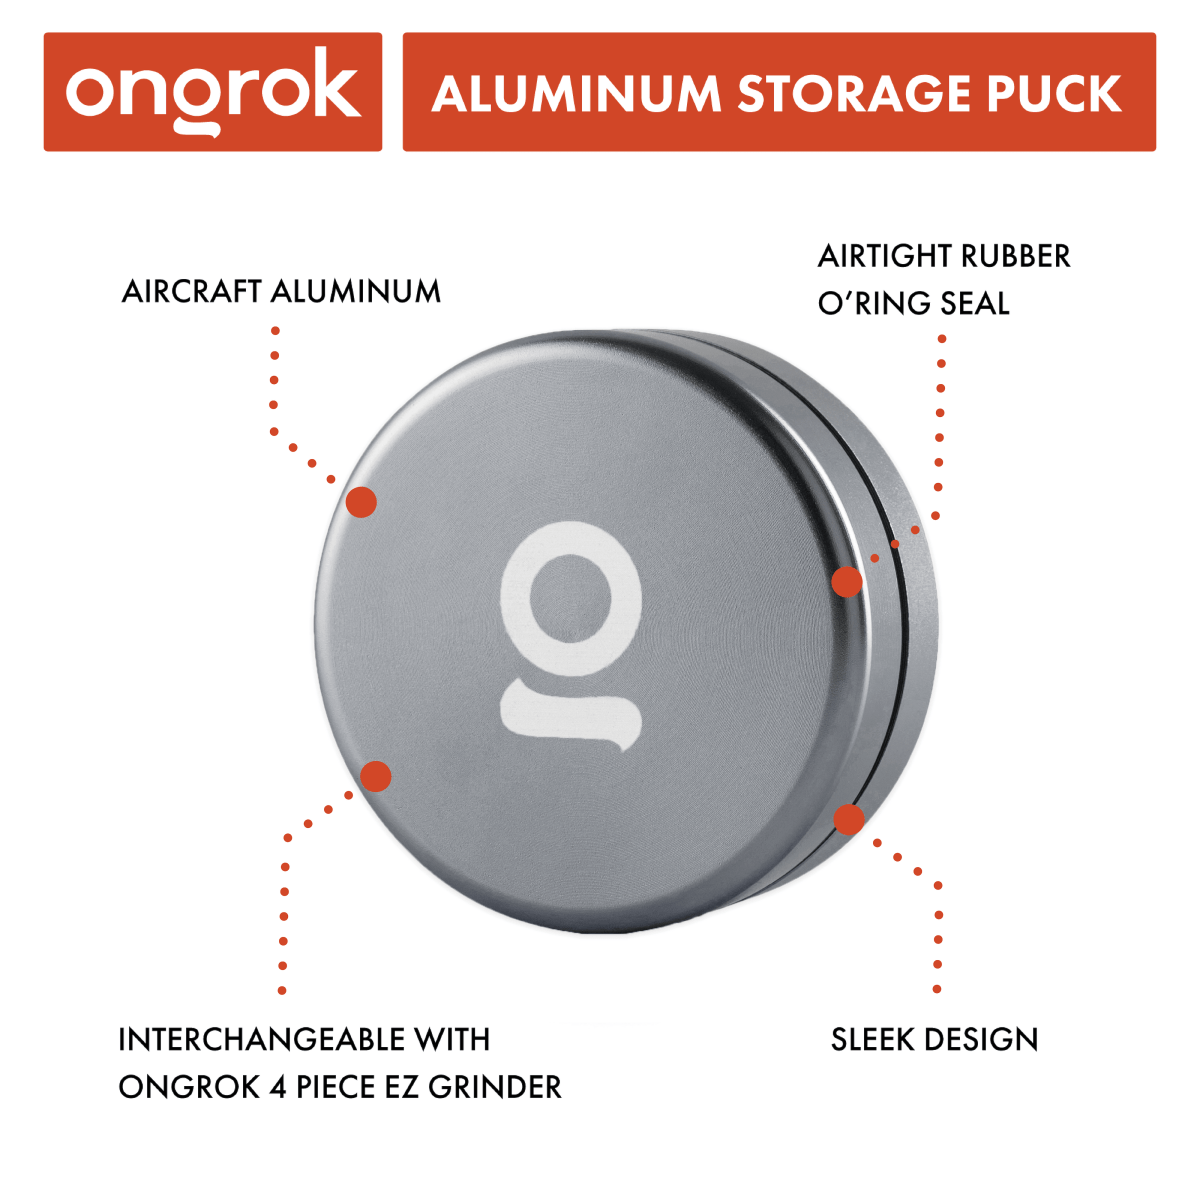 ONGROK Aluminium Storage Puck